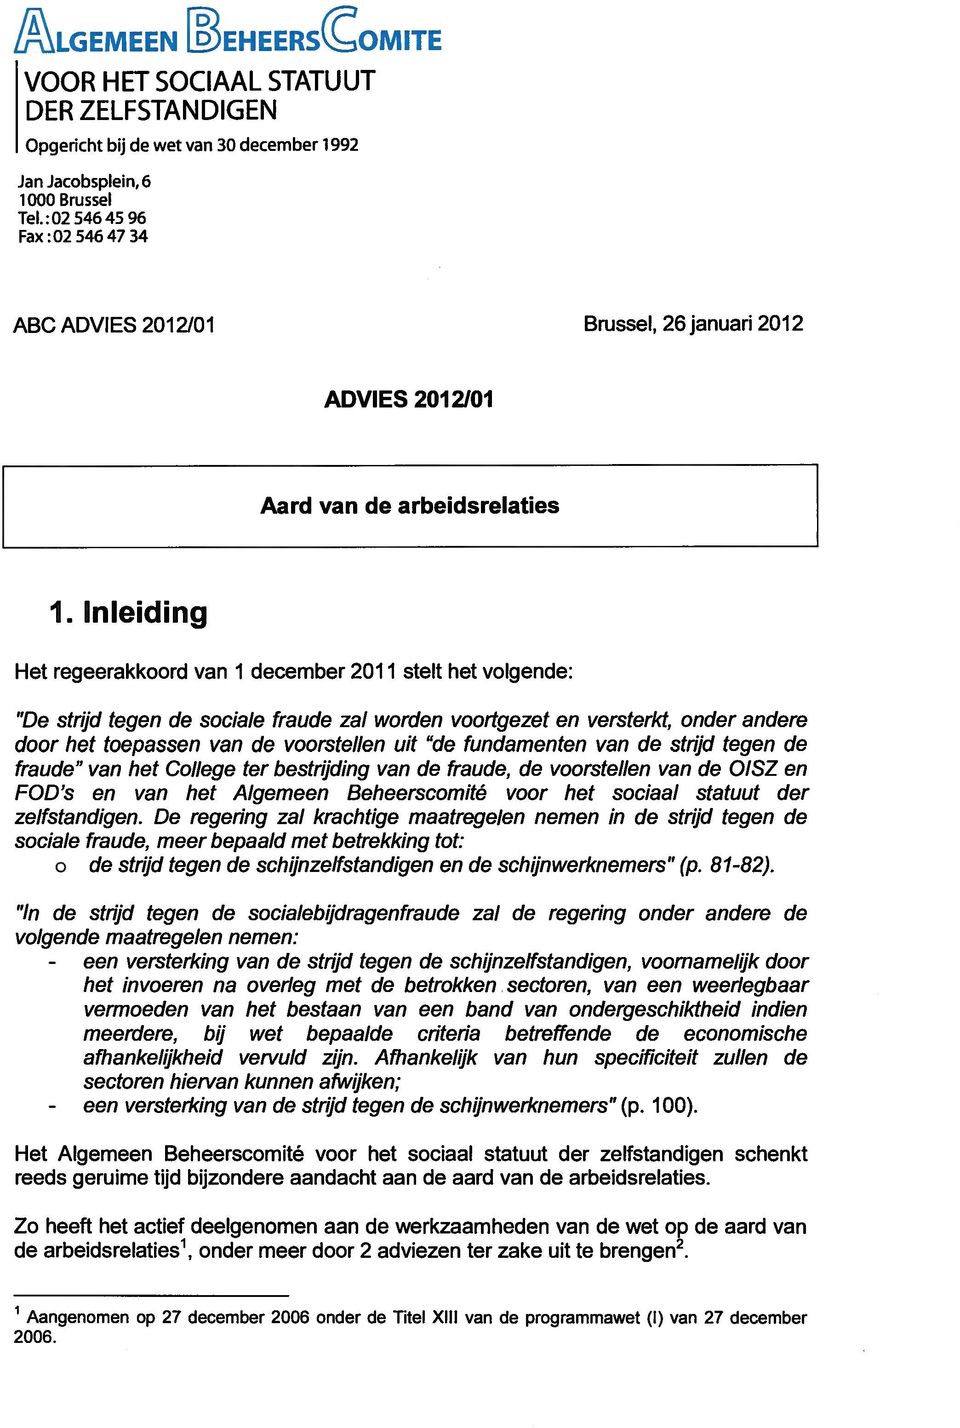 Inleiding Het regeerakkoord van 1 december 2011 stelt het volgende: "De strijd tegen de sociale fraude zal worden voortgezet en versterkt, onder andere door het toepassen van de voorstellen uit "de